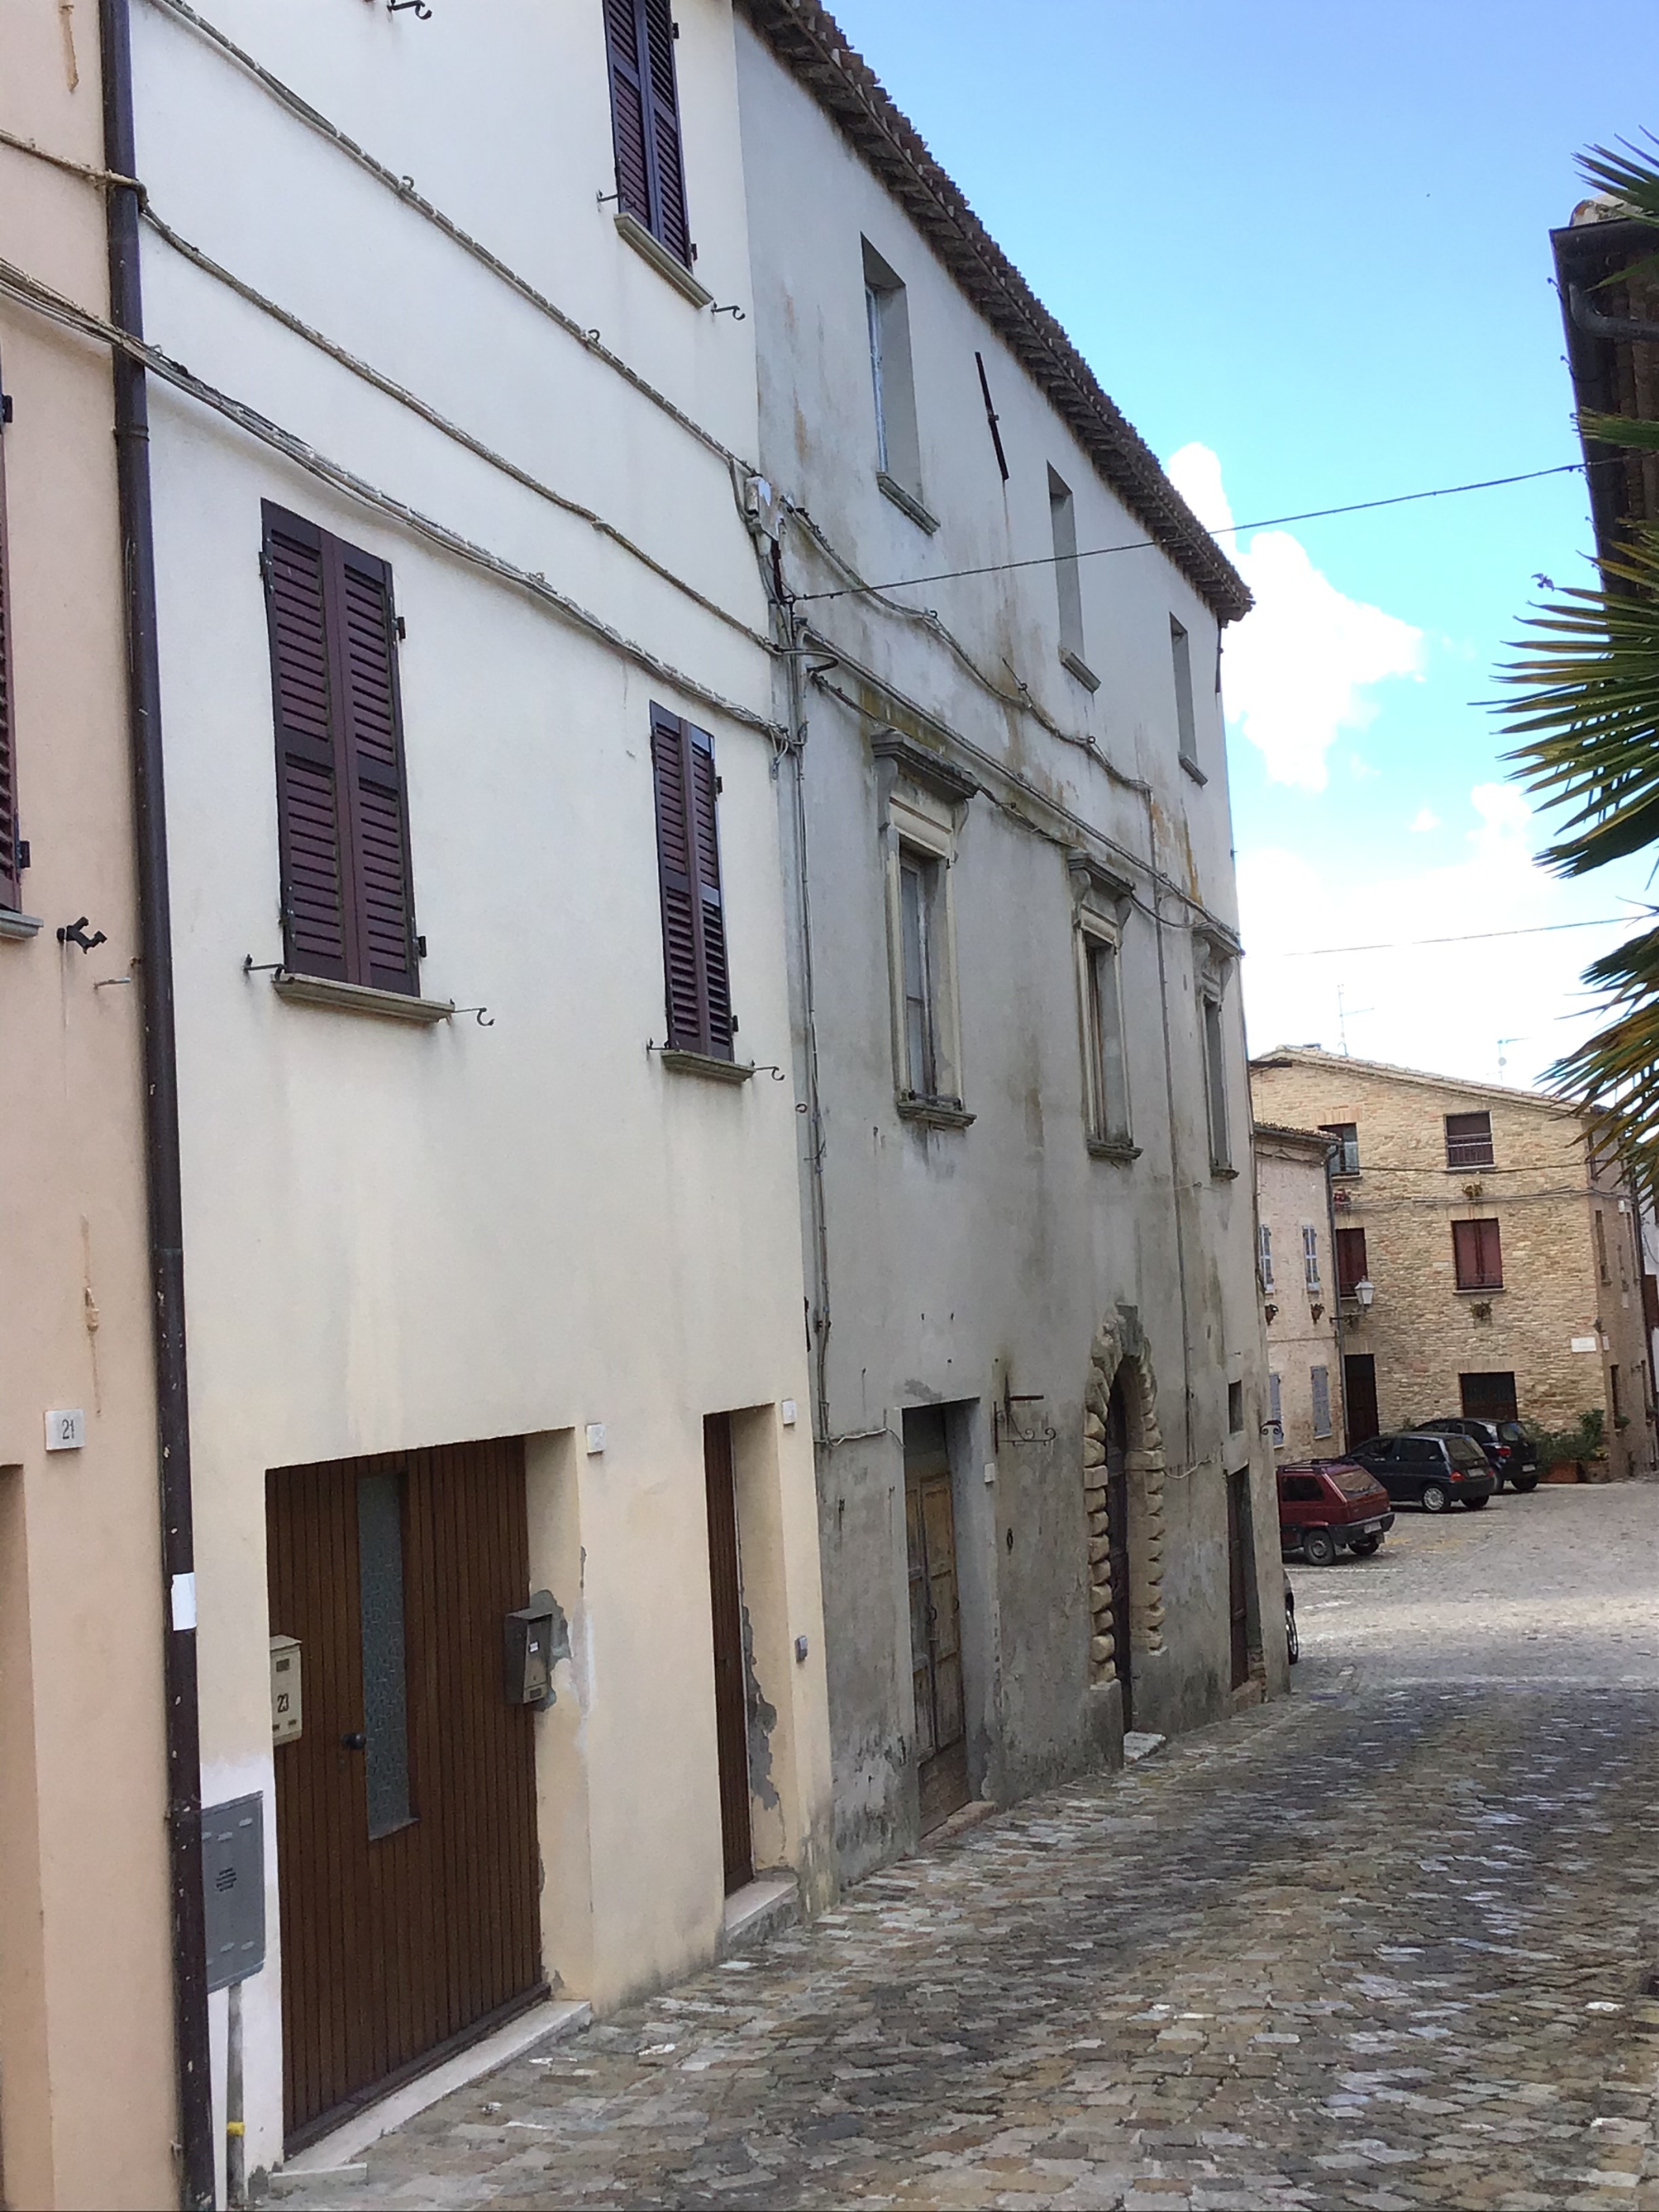 [Casa bifamiliare in Corso Umberto, 27, 29(P)] (casa, bifamiliare) - Terre Roveresche (PU) 